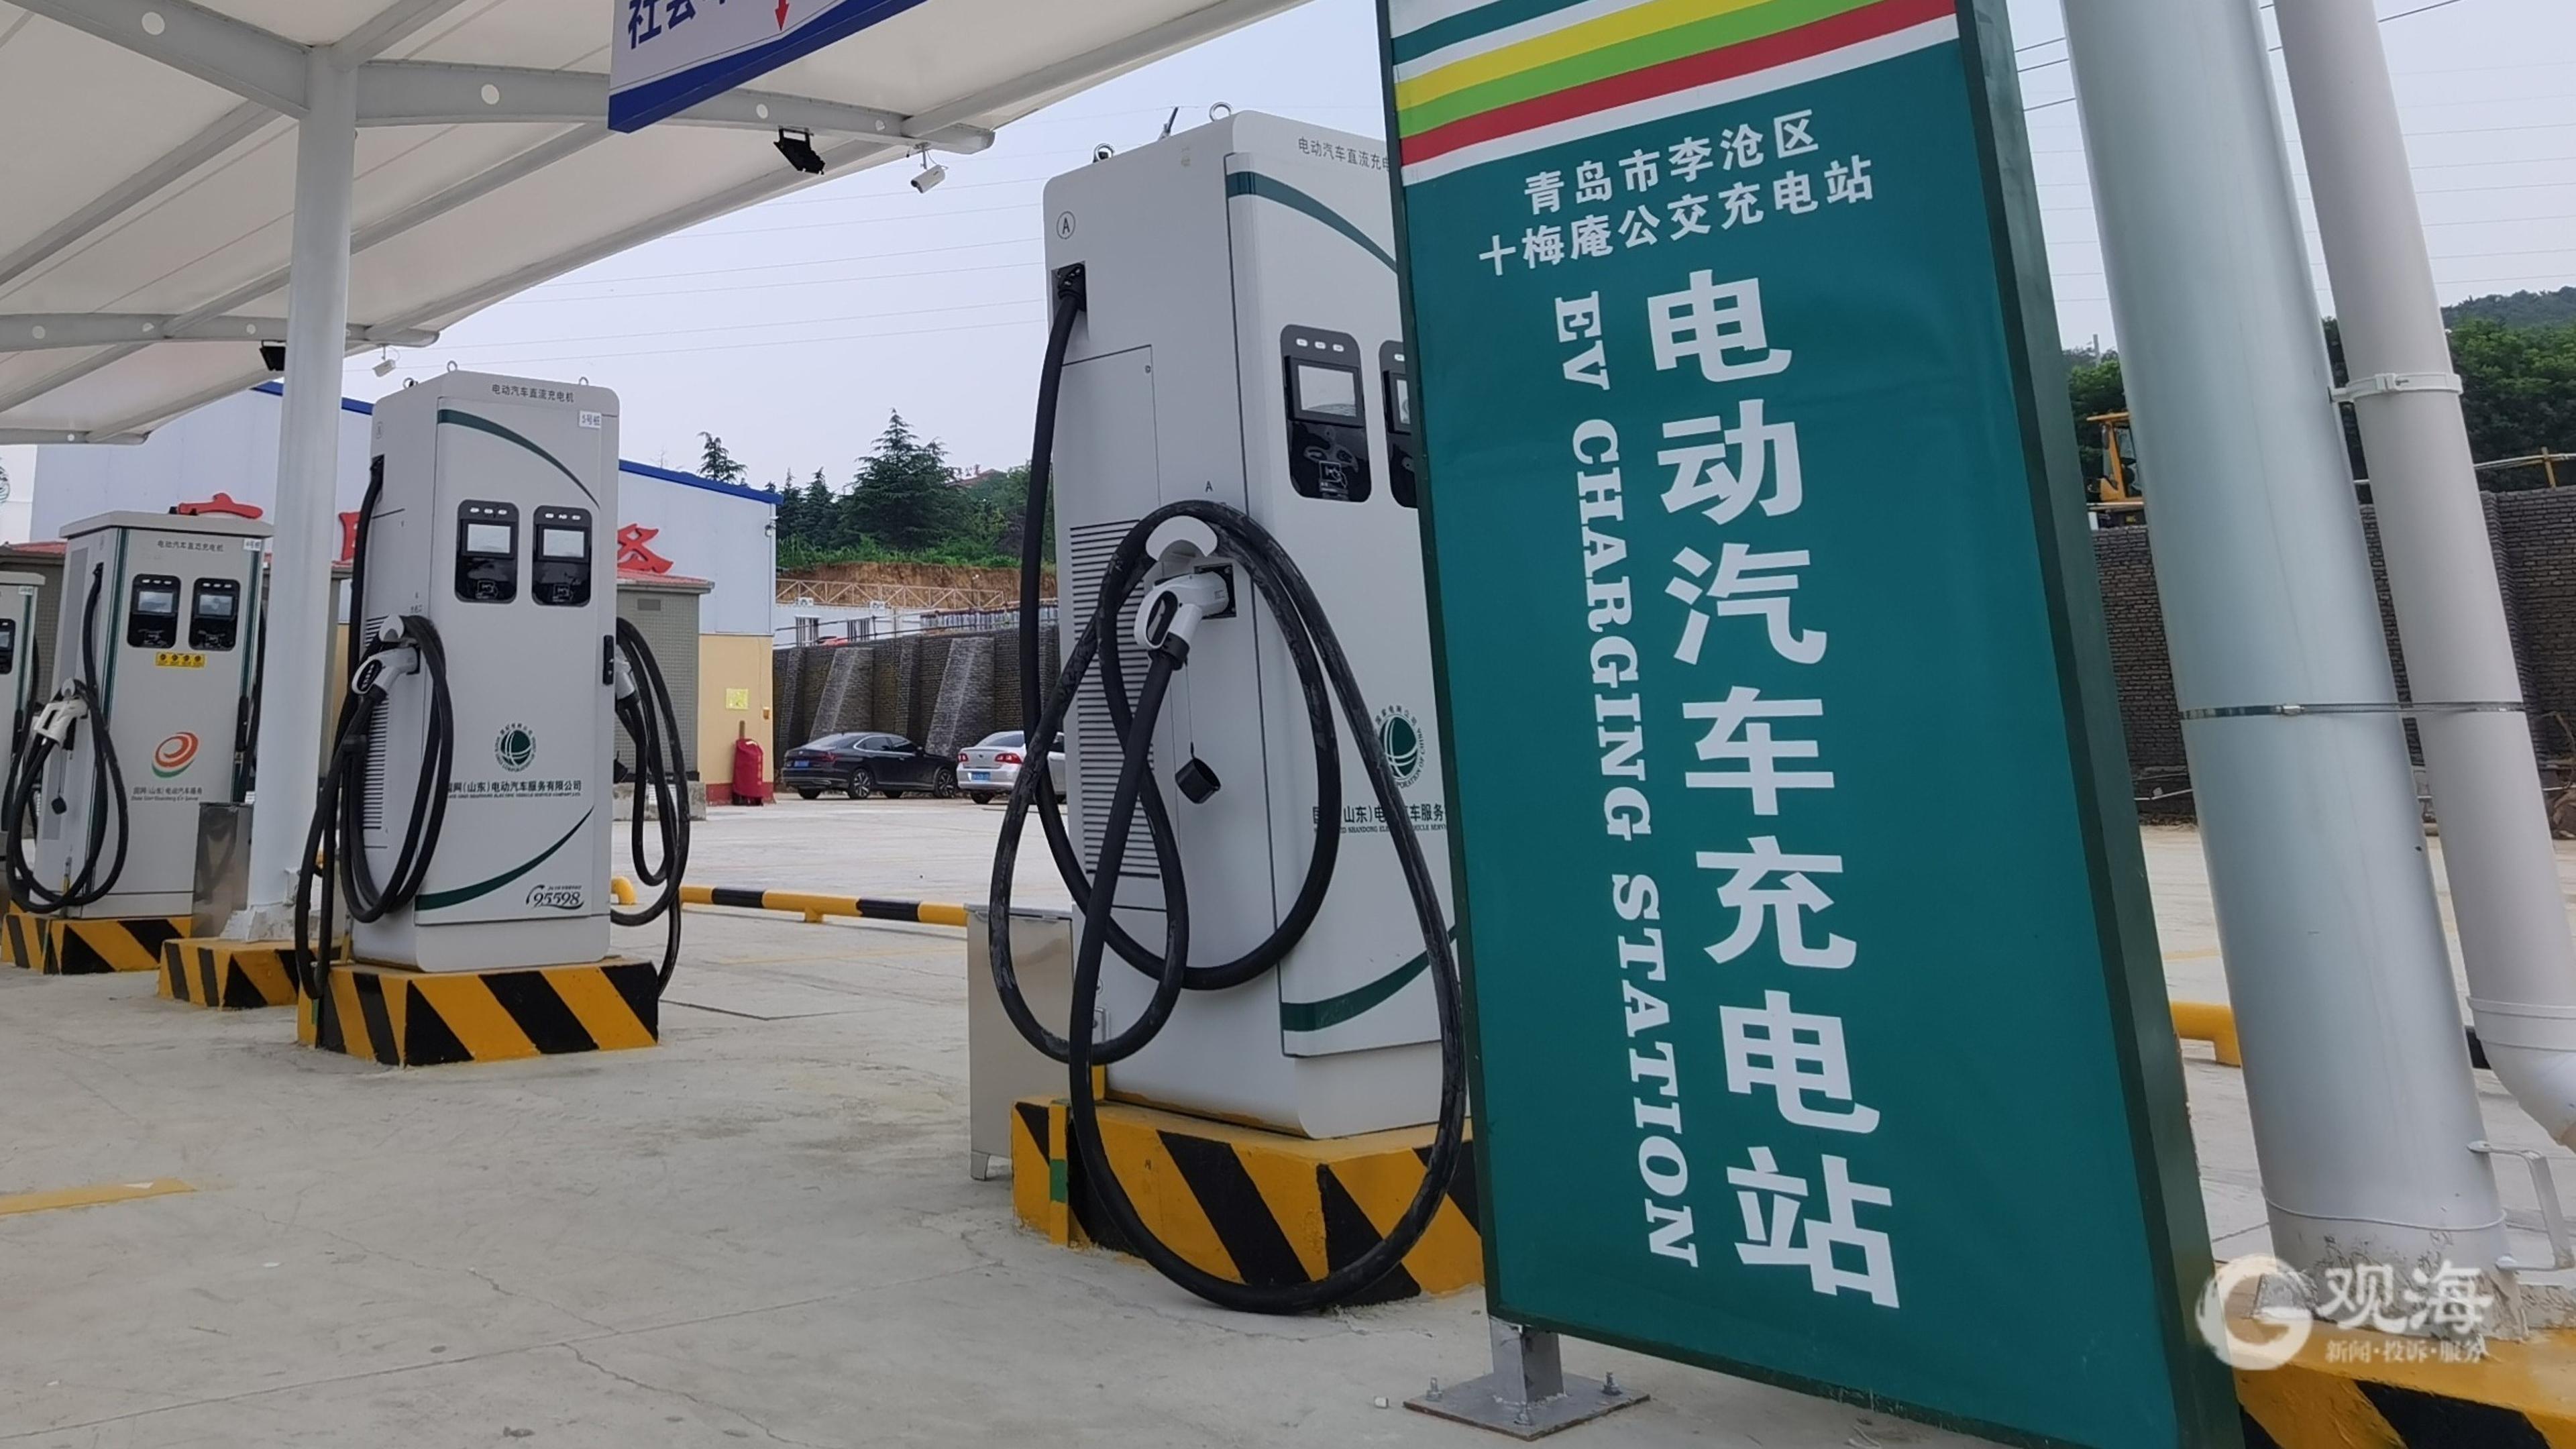 جایگاه های شارژ خودروی برقی در بلاروس با خودروهای چینی منطبق می شوندا